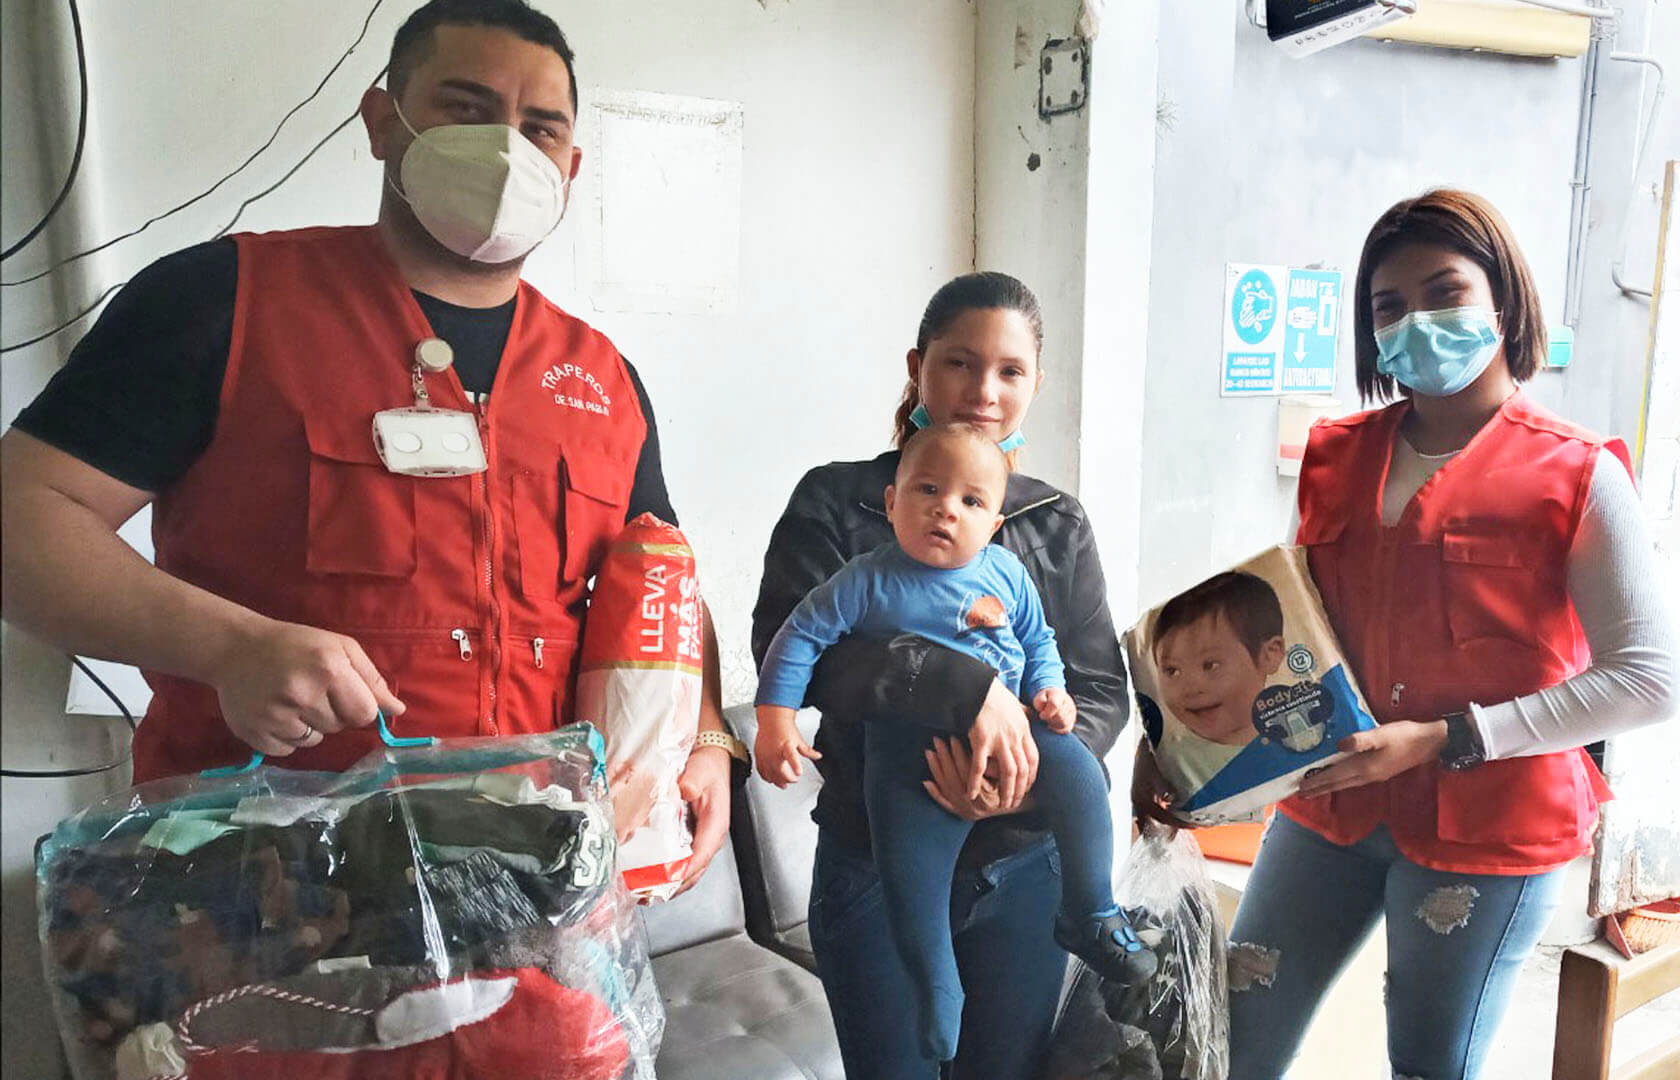 ▷ Donación de Artículos para Bebes - Lima 【 DONAR 】